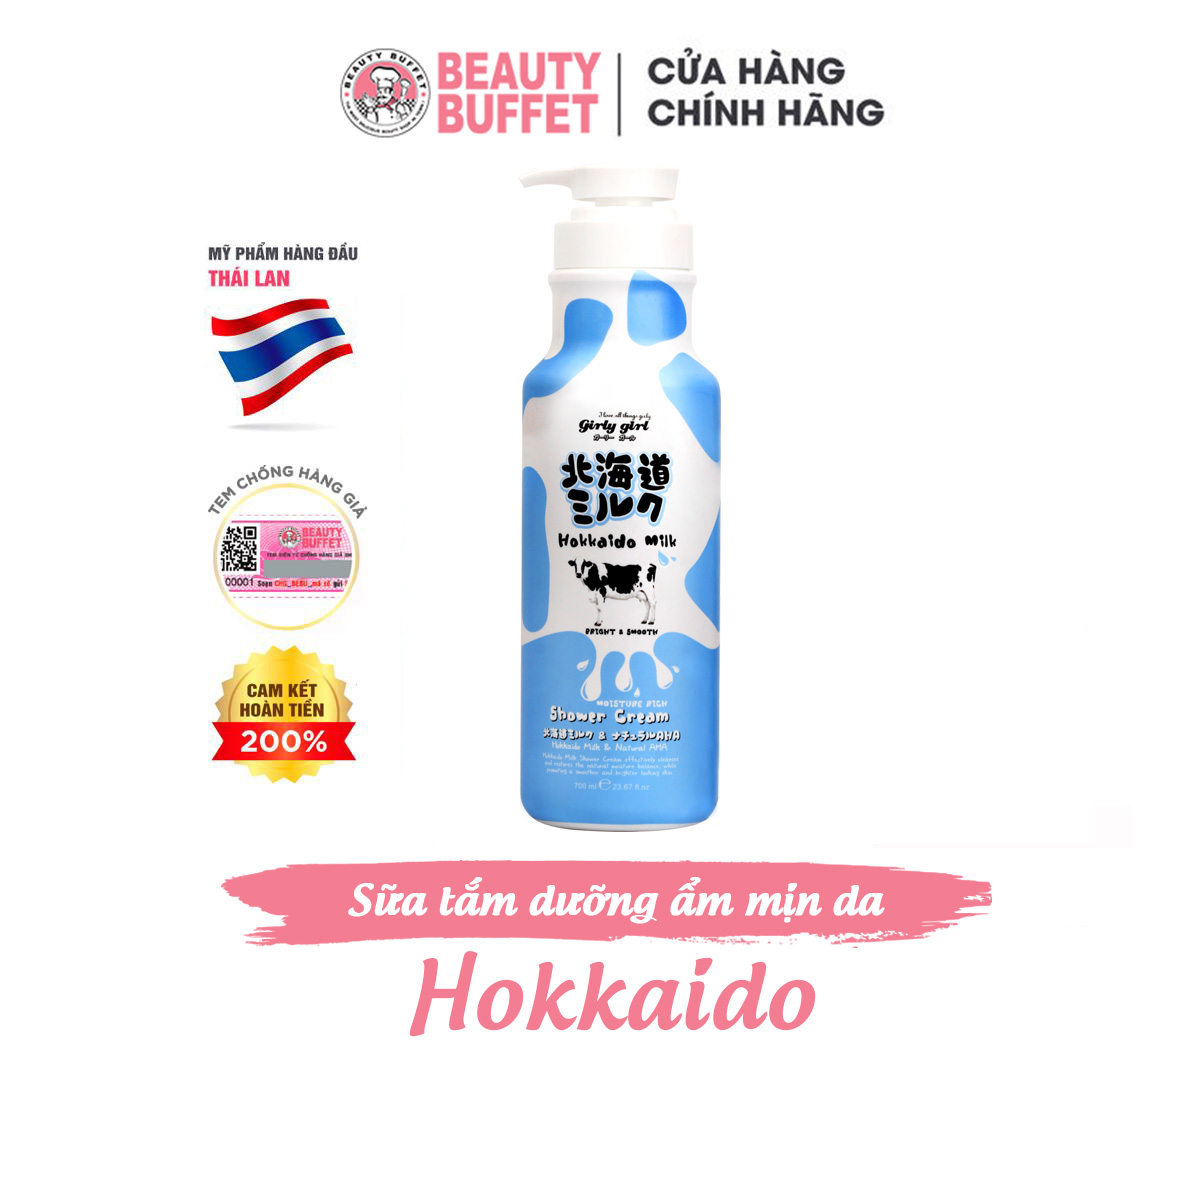 Sữa tắm dưỡng ẩm và sáng mịn da từ Protein sữa Hokkaido Made In Nature 700ml